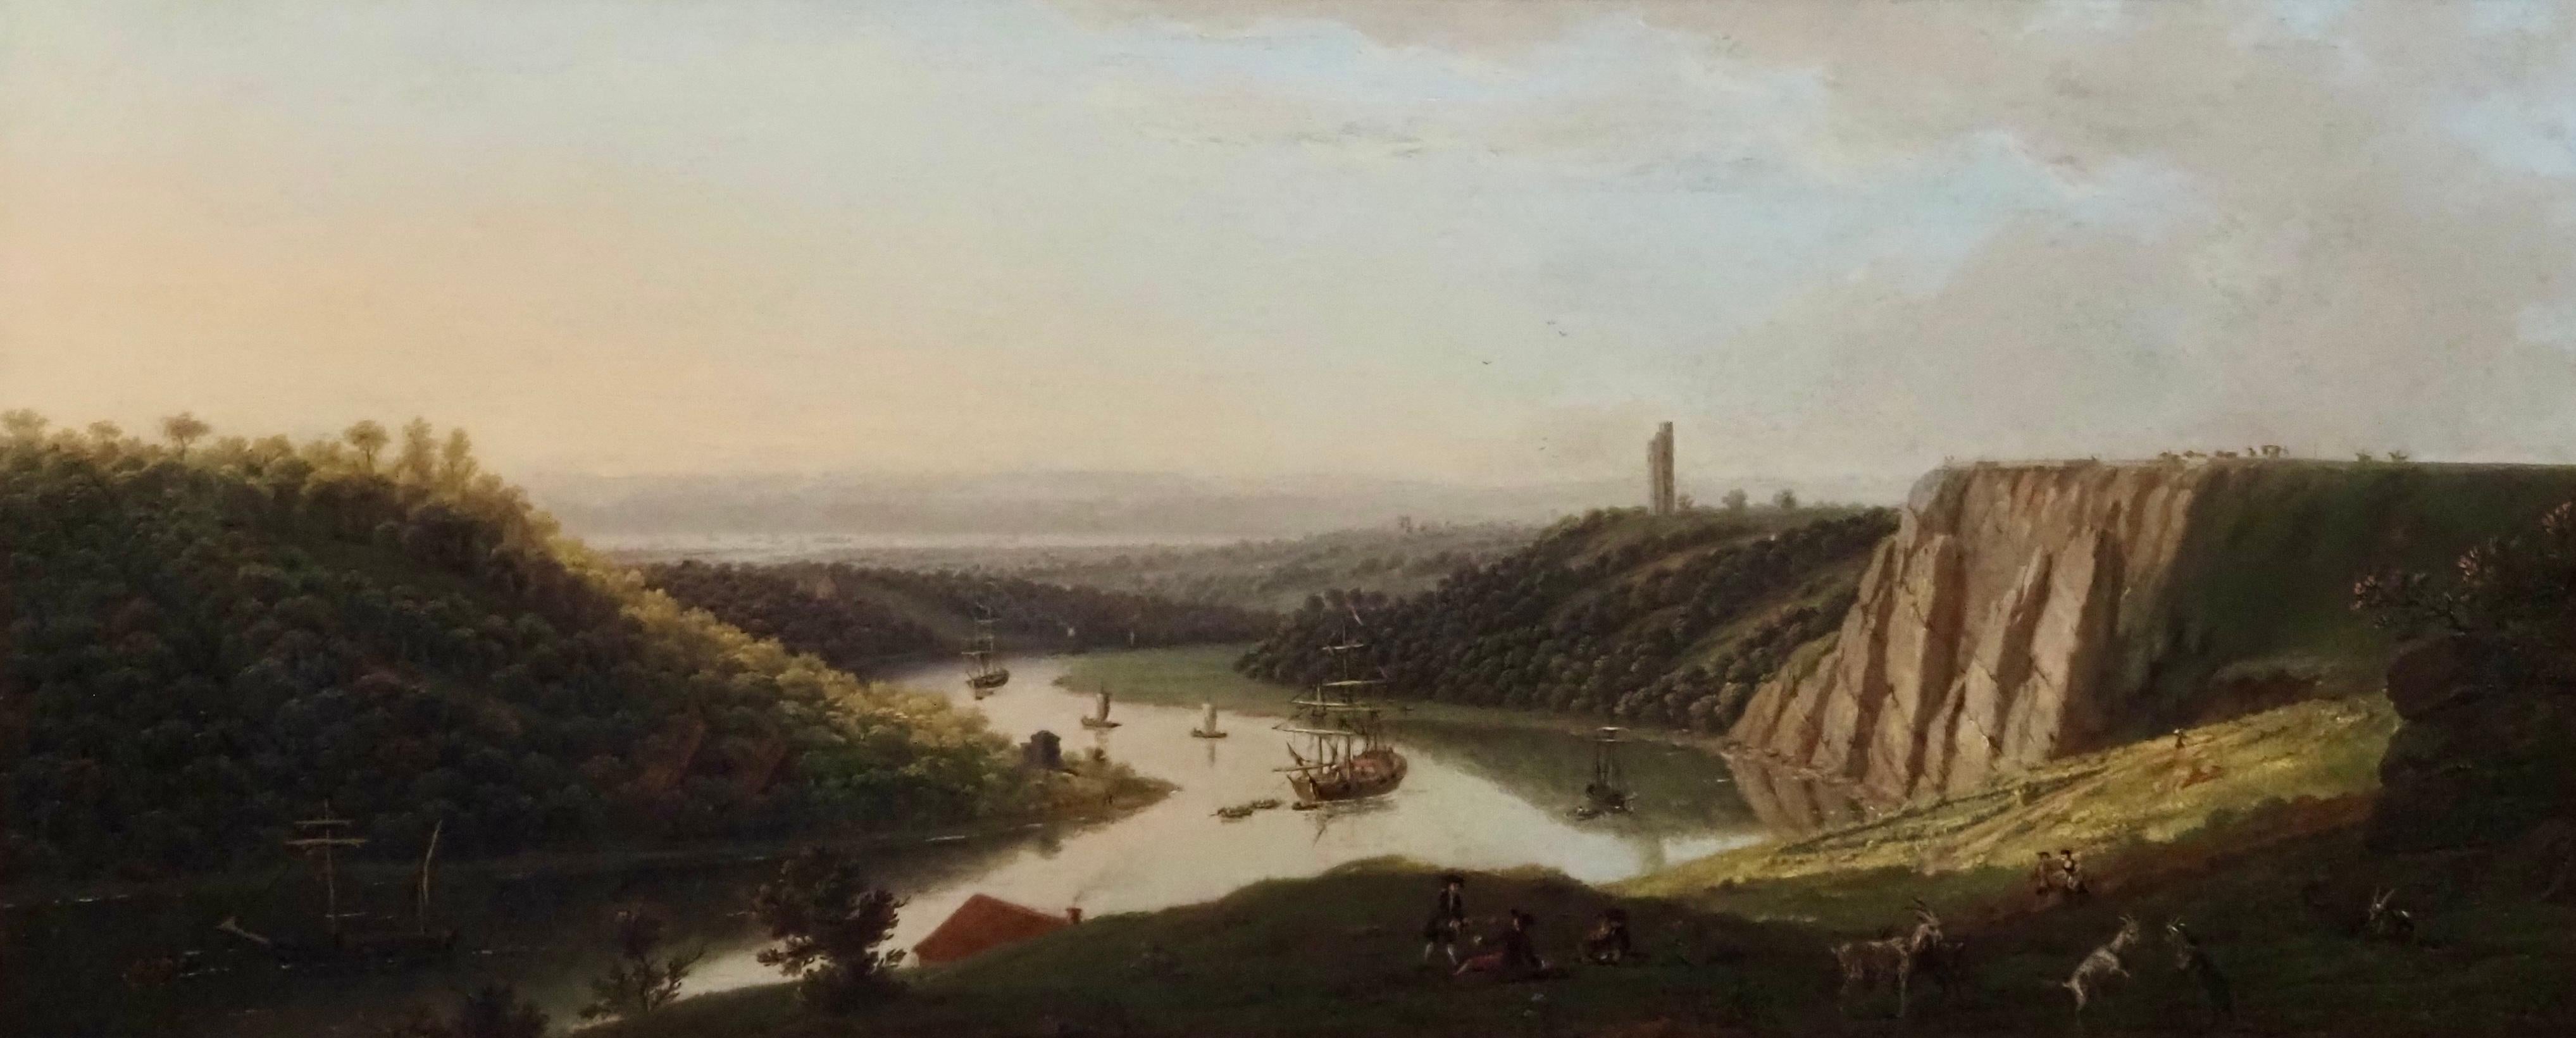 Blick auf die Schifffahrt auf dem Avon von Durdham Down, in der Nähe von Bristol – Painting von Thomas Smith of Derby